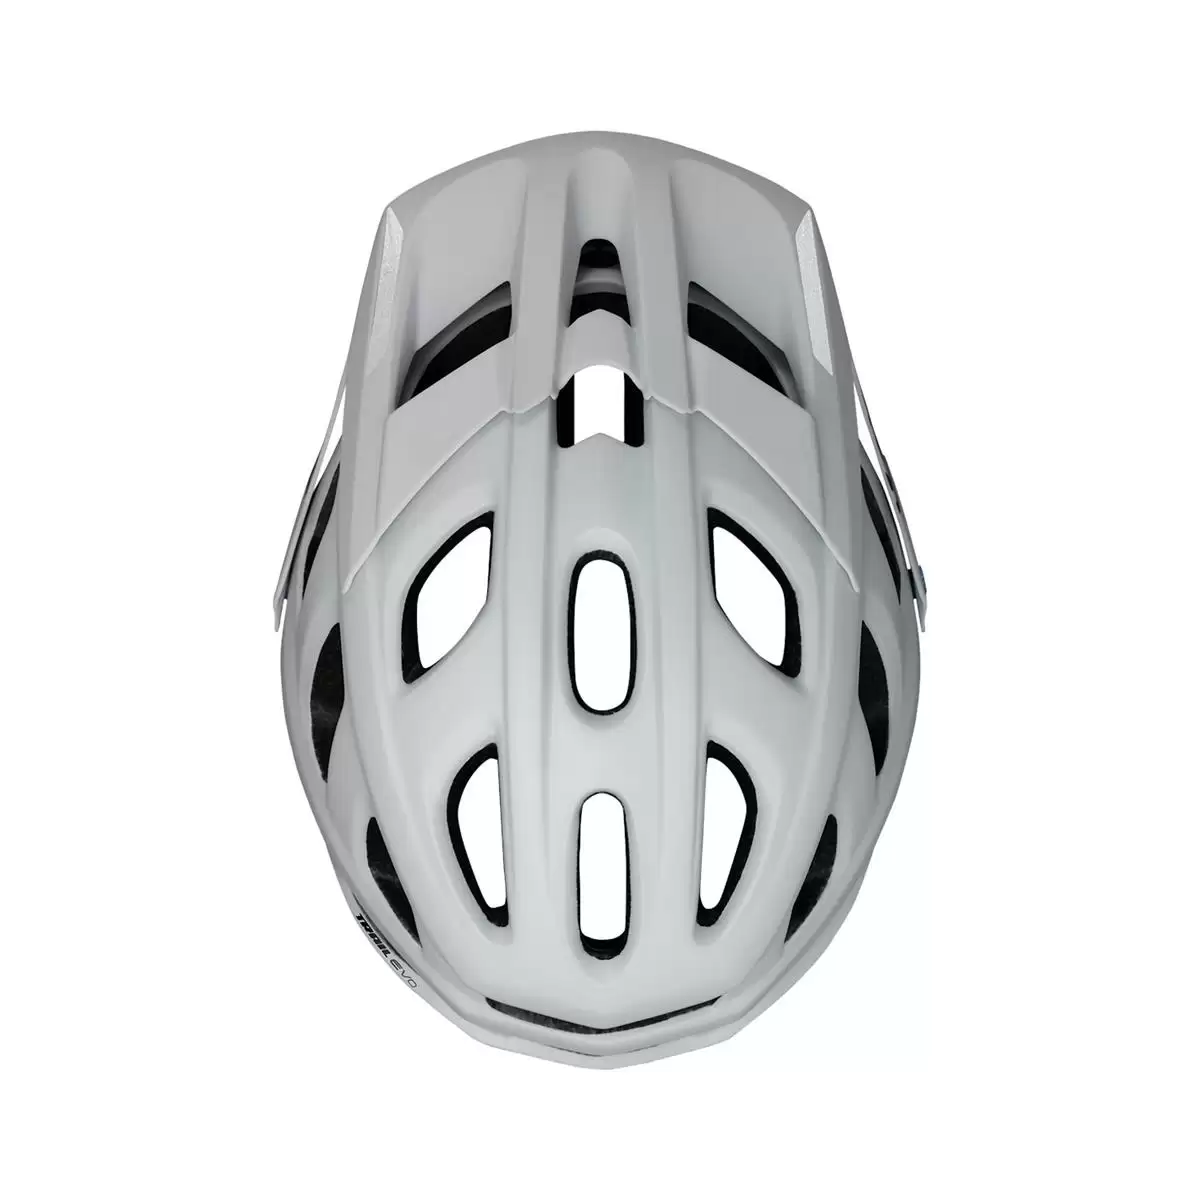 Henduro Helmet Trail Evo E-Bike Edition White Size M/L (58-62cm) #2